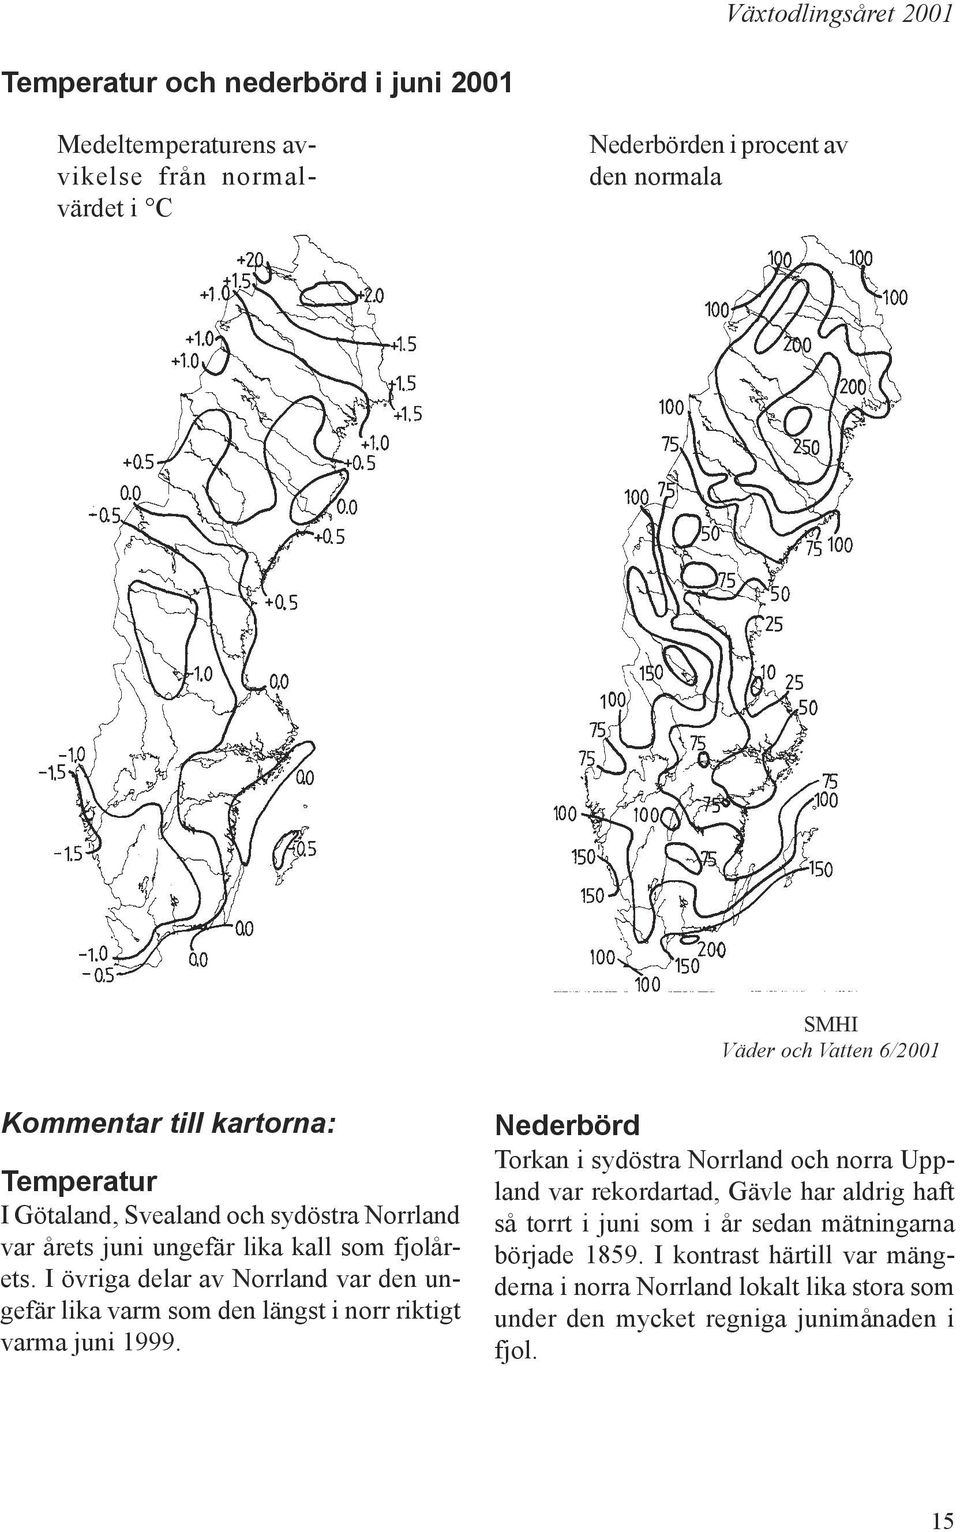 Torkan i sydöstra Norrland och norra Uppland var rekordartad, Gävle har aldrig haft så torrt i juni som i år sedan